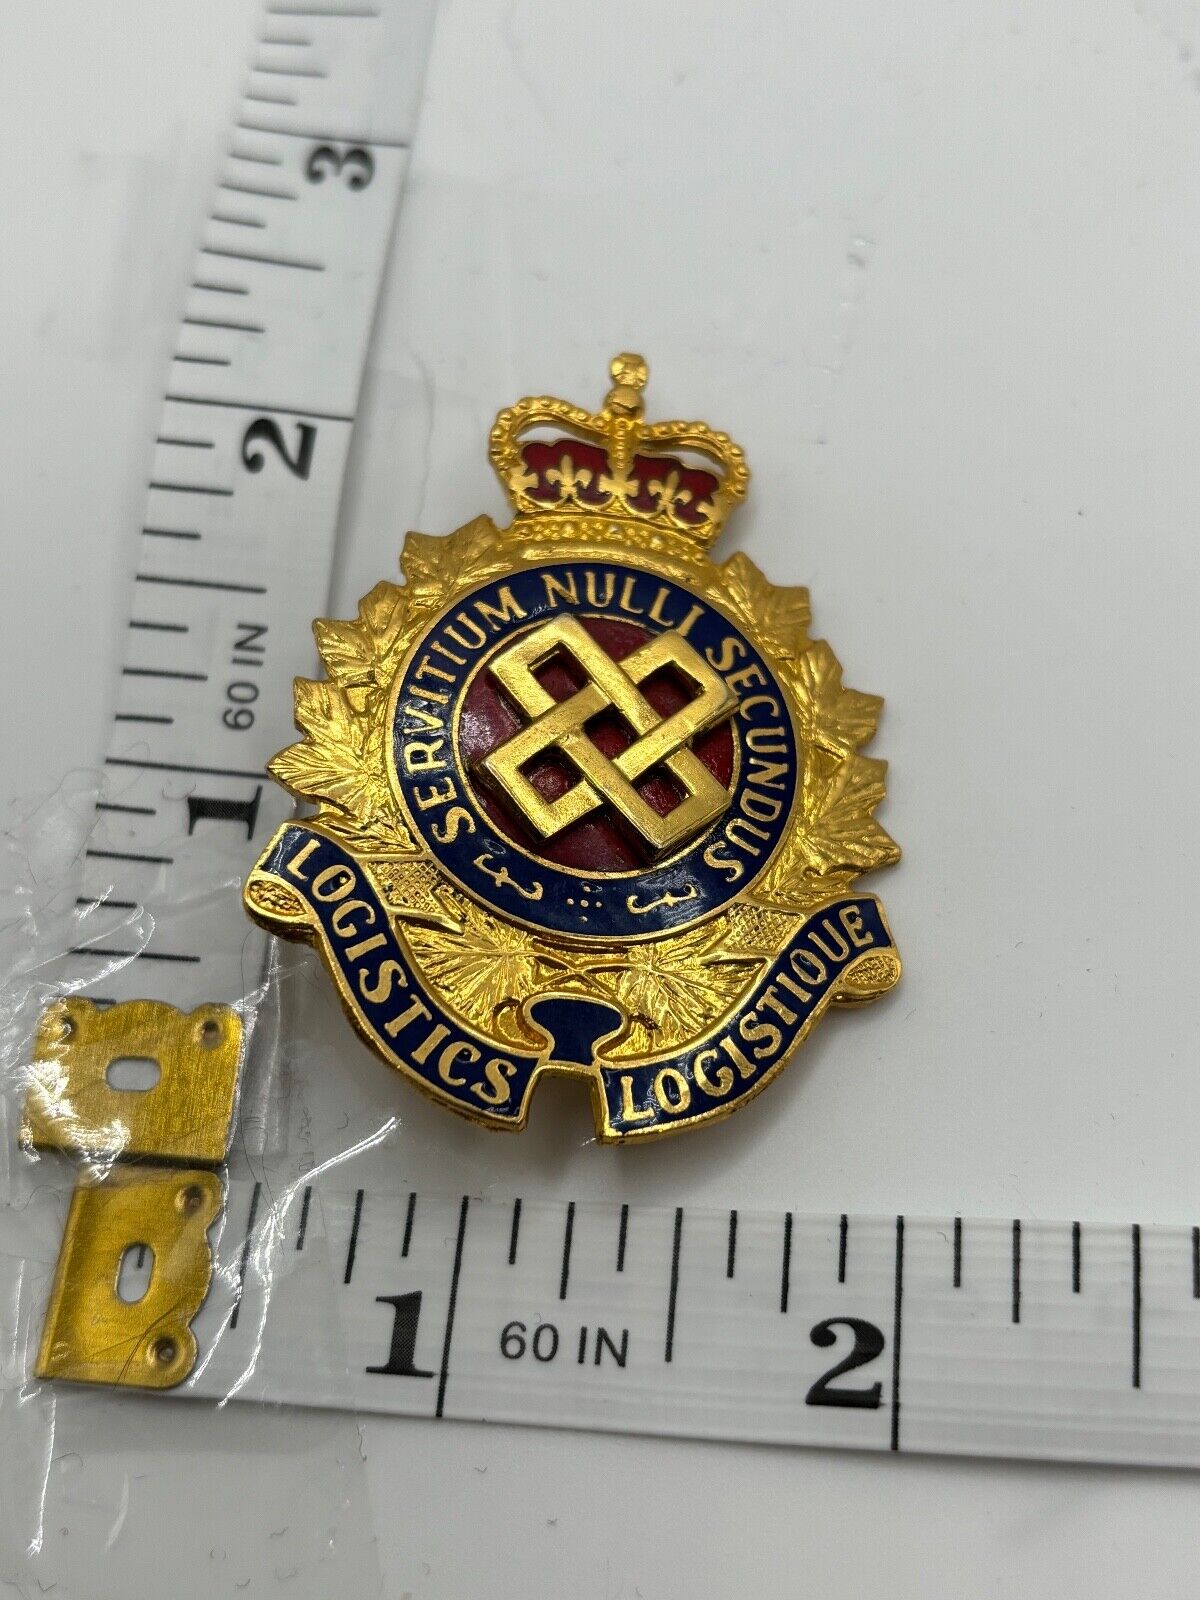 Canadian Forces Logistics Branch cap badge metal (no tang)